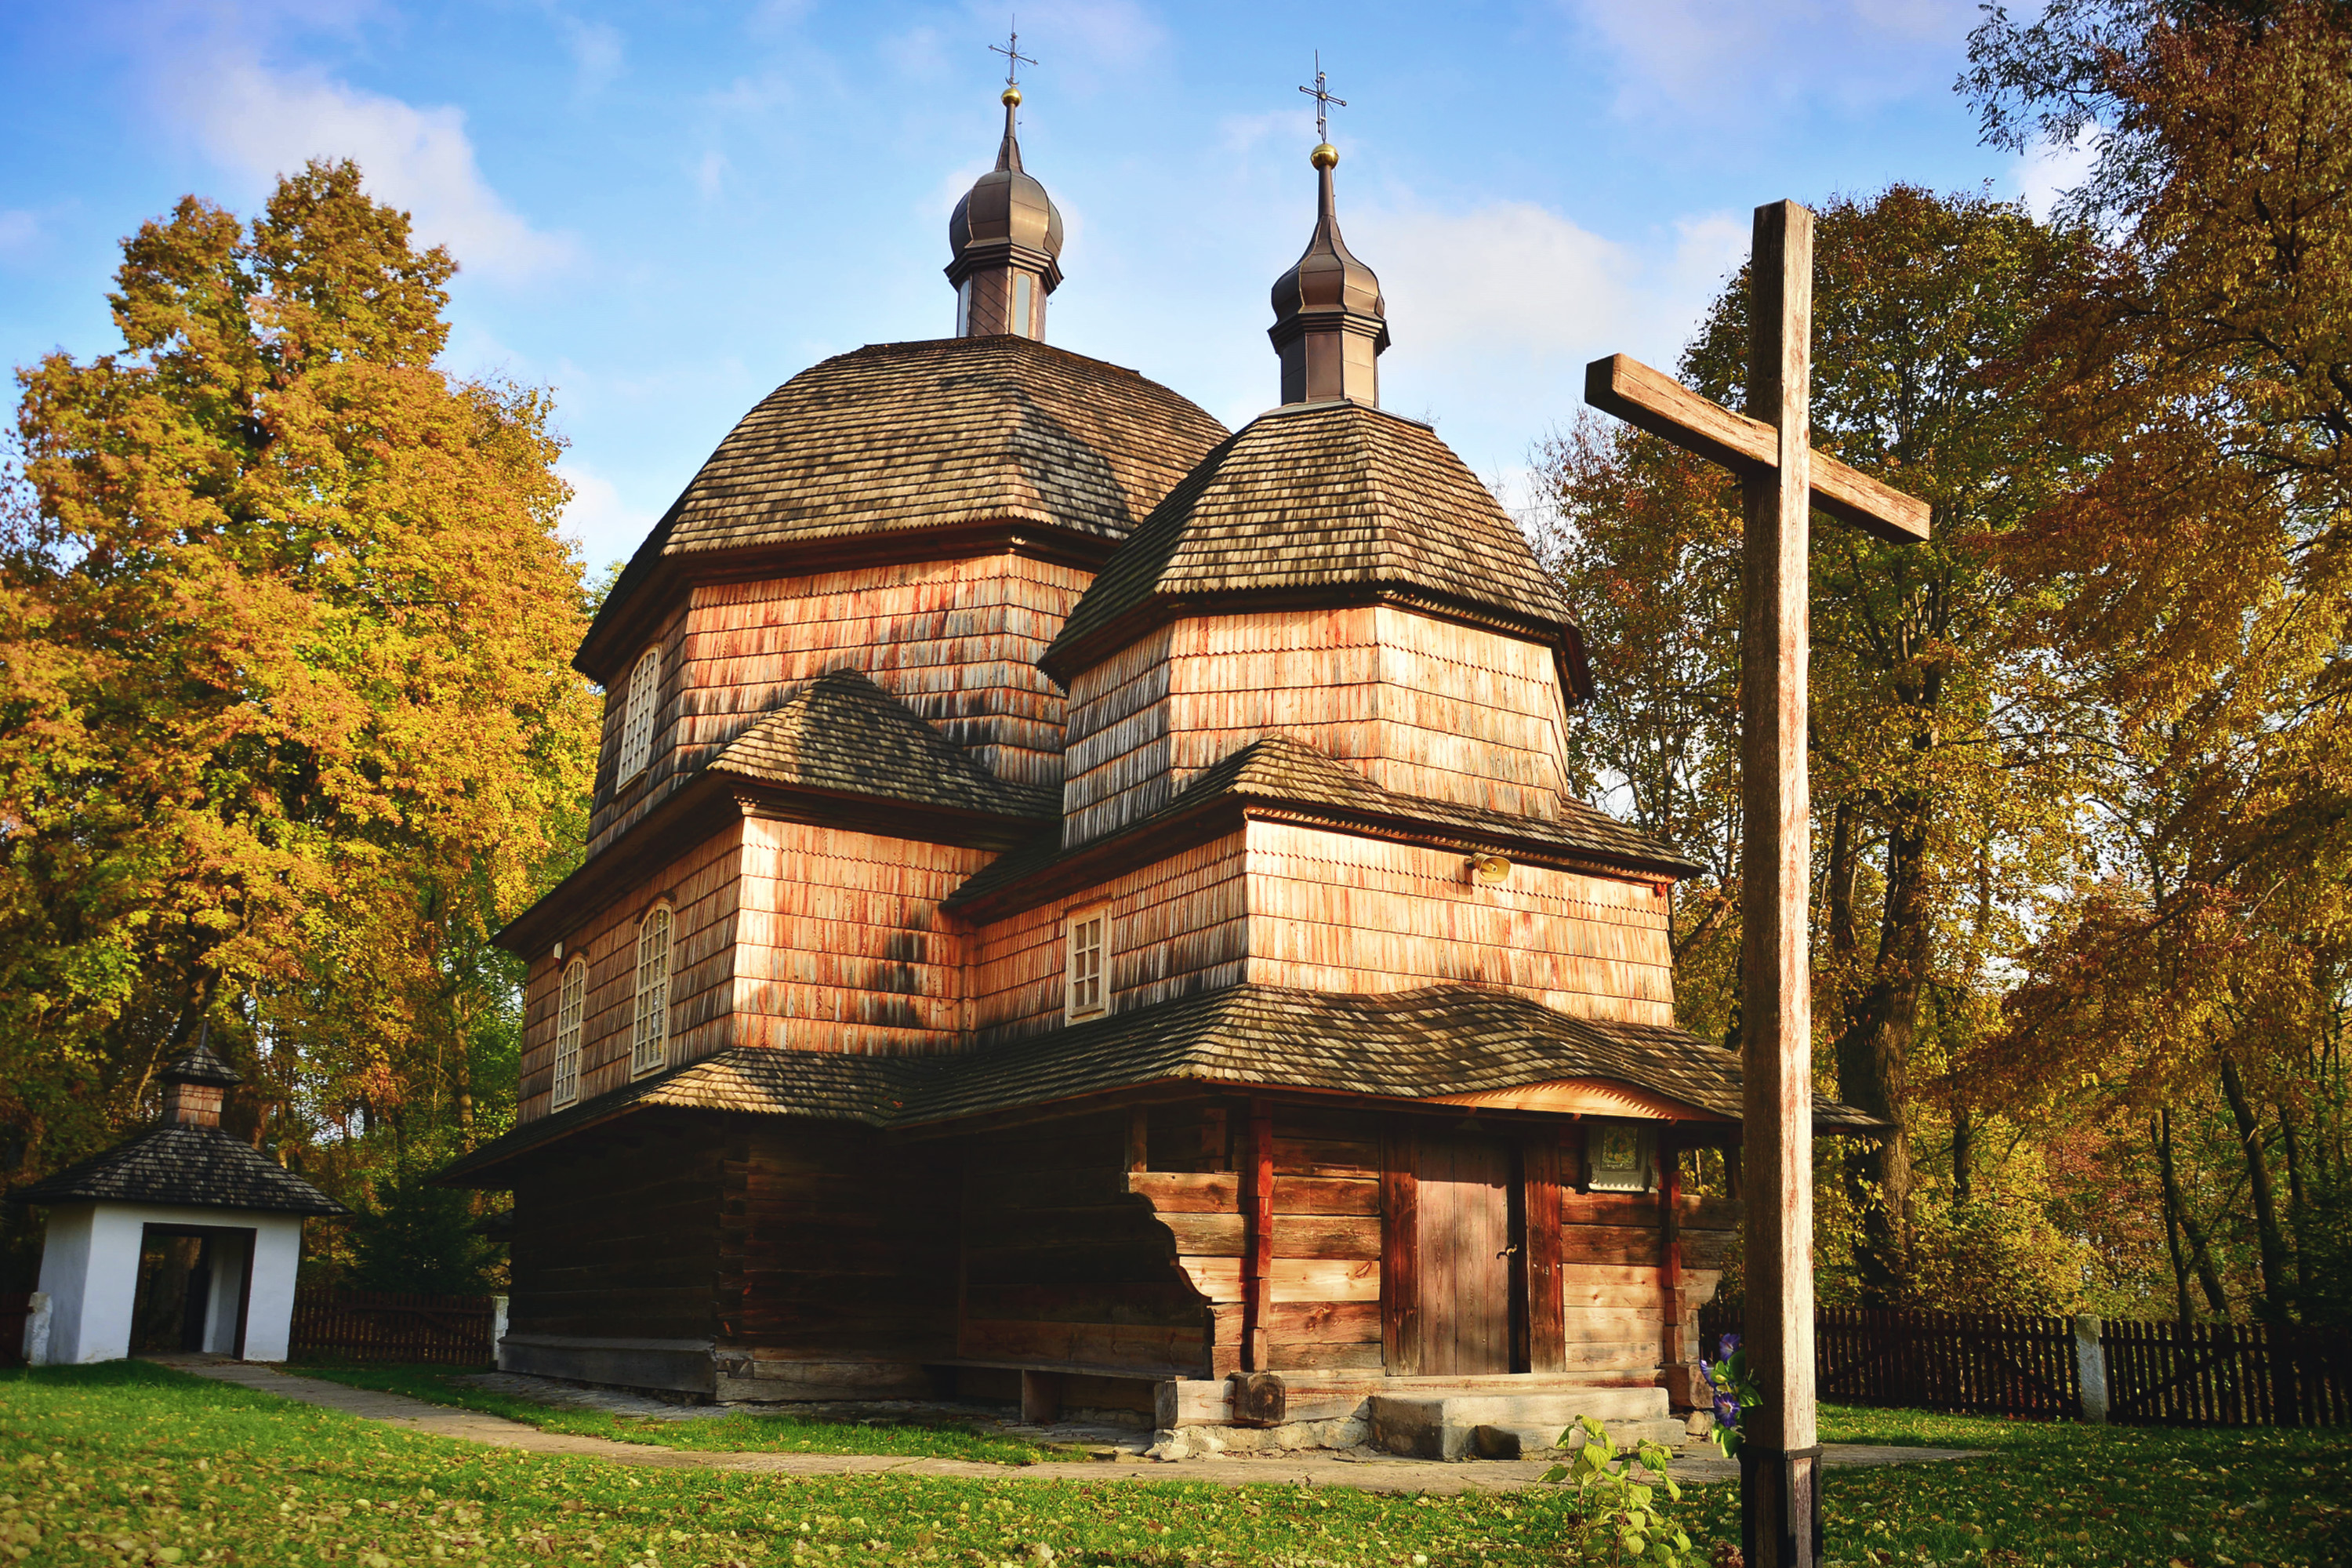 Drewniana cerkiew w Hrebennem należy do najpiękniejszych w Polsce zabytków sakralnej architektury drewnianej.